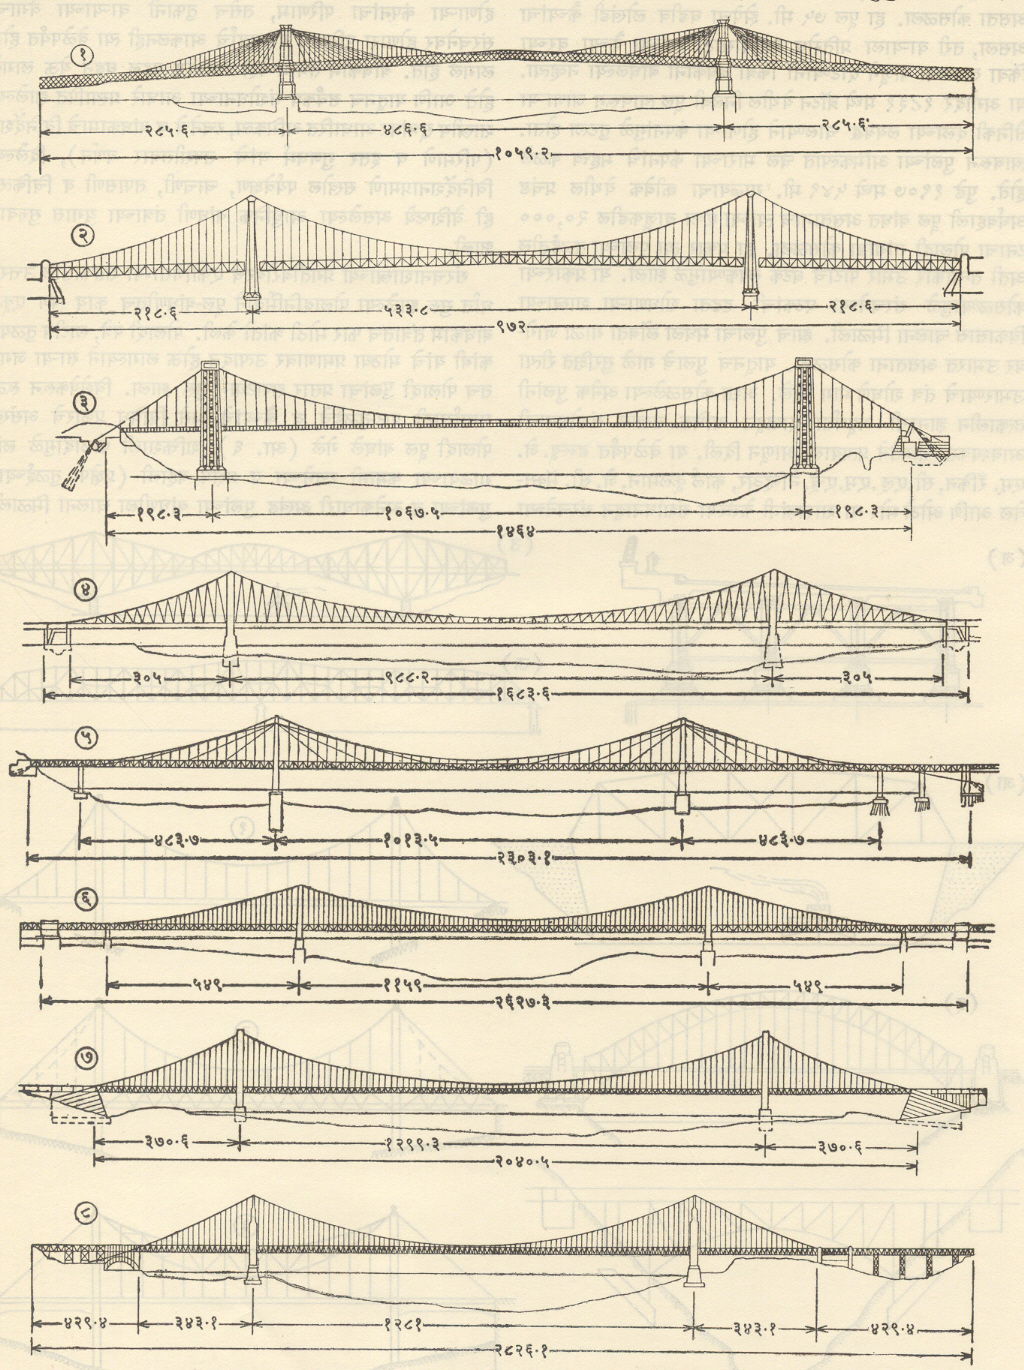 आ. ७. आधुनिक काळातील विविध उल्लेखनीय निलंबी व प्रक्षेप बहाली पूल : (अ) निलंबी पूल: (१) ब्रुकलिन पूल, न्यूयॉर्क, (२) फिलाडेल्फिया कॅमडेन पूल, (३) जॉर्ज वॉशिंग्टन पूल, न्यूयॉर्क, (४) सेव्हन पूल, ब्रिटन, (५) सालाझार पूल, लिस्बन, (६) मॅकिनॅक (मॉकिनॉ) सामुद्रधुनी पूल, मिशिगन, (७) व्हेराझानो-नॅरोज पूल, न्यूयॉर्क, (८) गोल्डन गेट पूल, सॅन फ्रॅन्सिस्को. (मापे मीटरमध्ये दिली आहेत). 